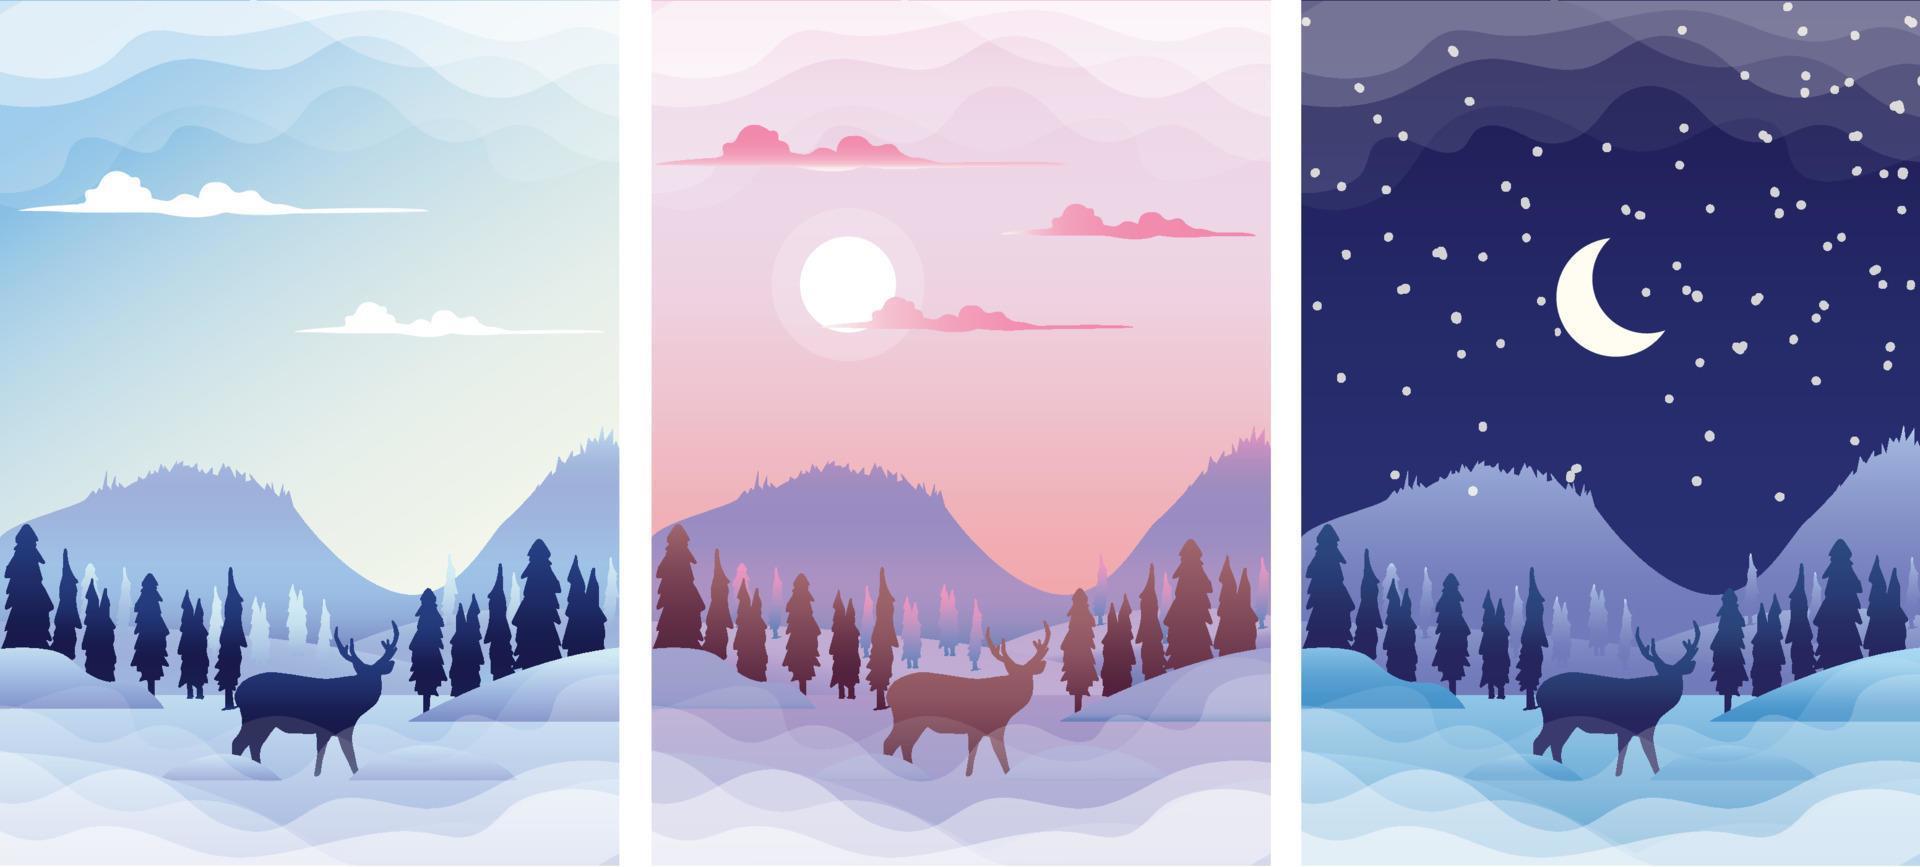 venta de invierno con paisaje al amanecer, atardecer y noche. Banners de temporada de invierno establecen ilustración de vector de plantilla.